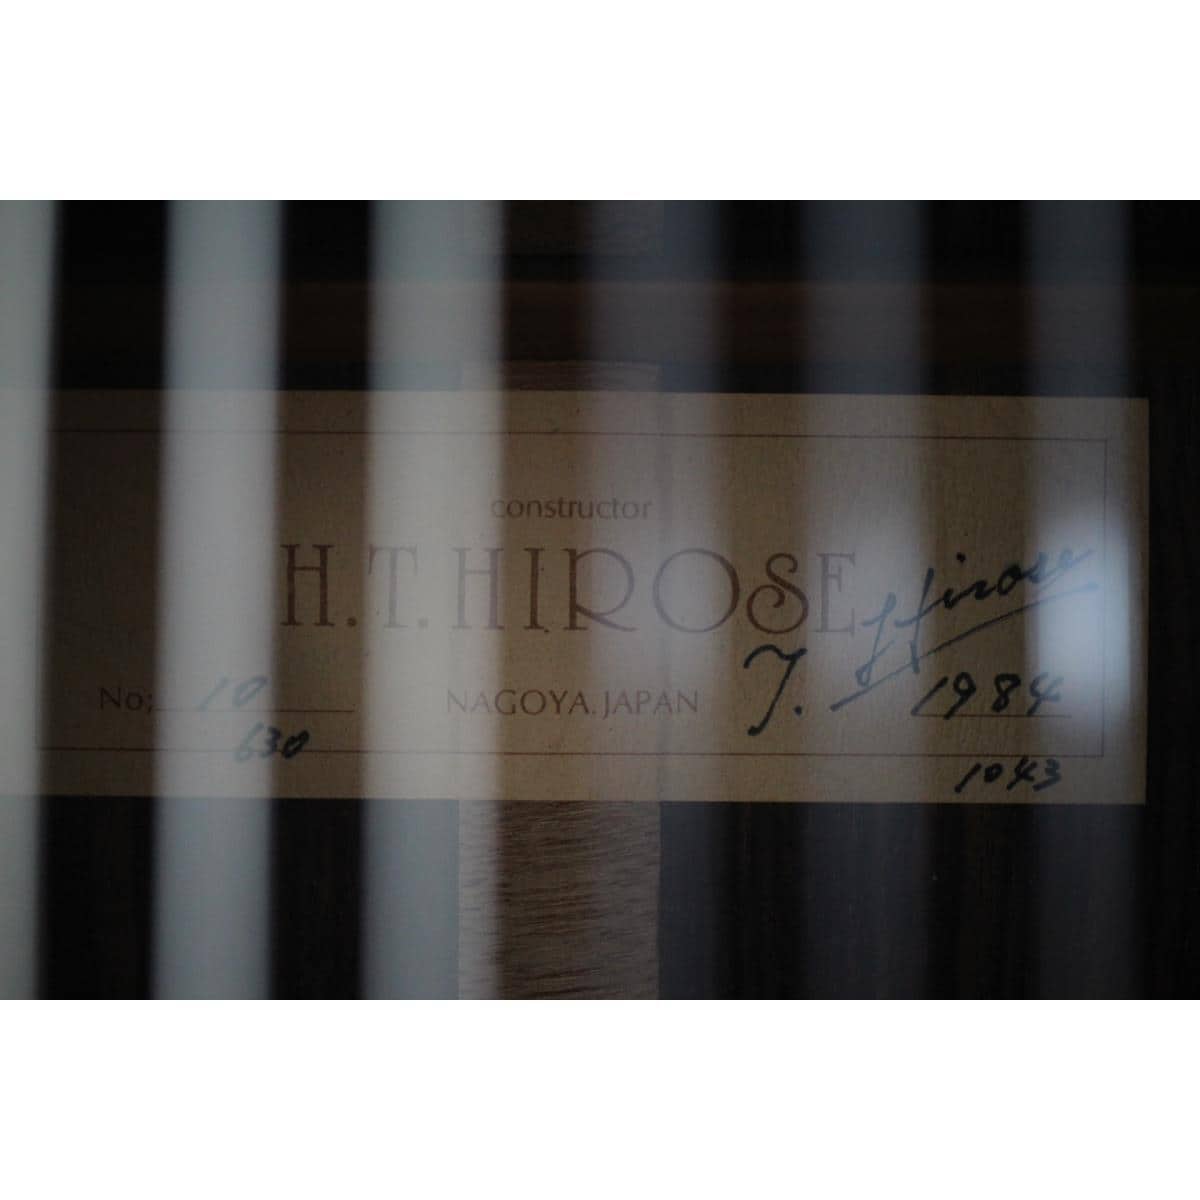 H. T. HIROSE NO.10